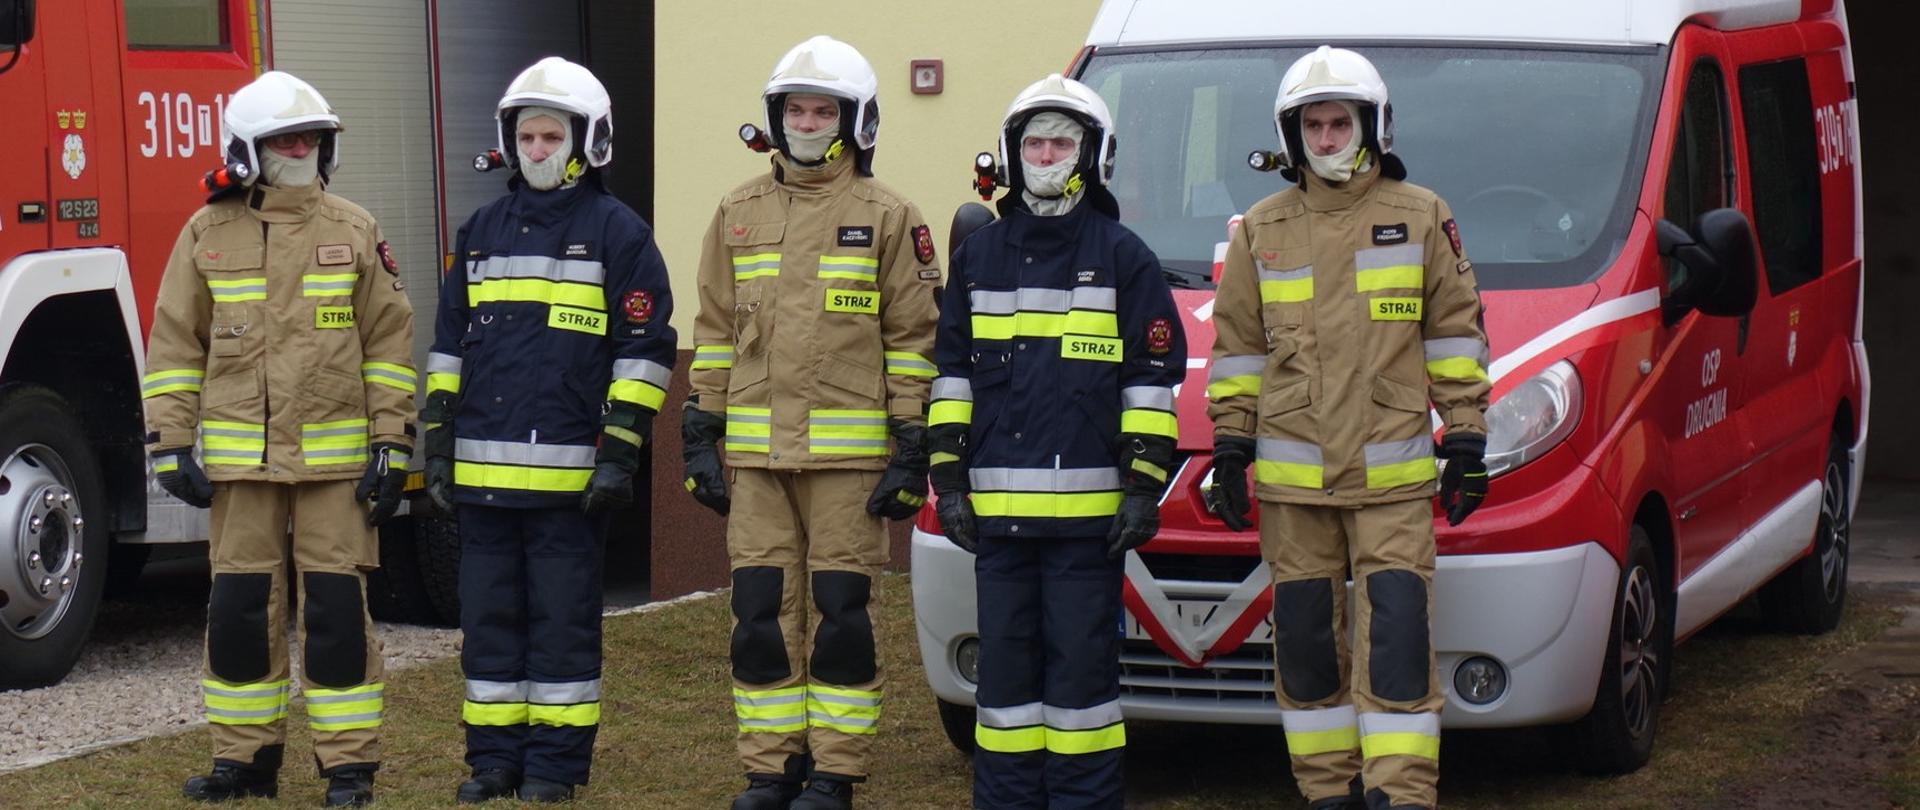 Na zdjęciu widzimy grupę pięciu strażaków stojących na tle samochodu pożarniczego